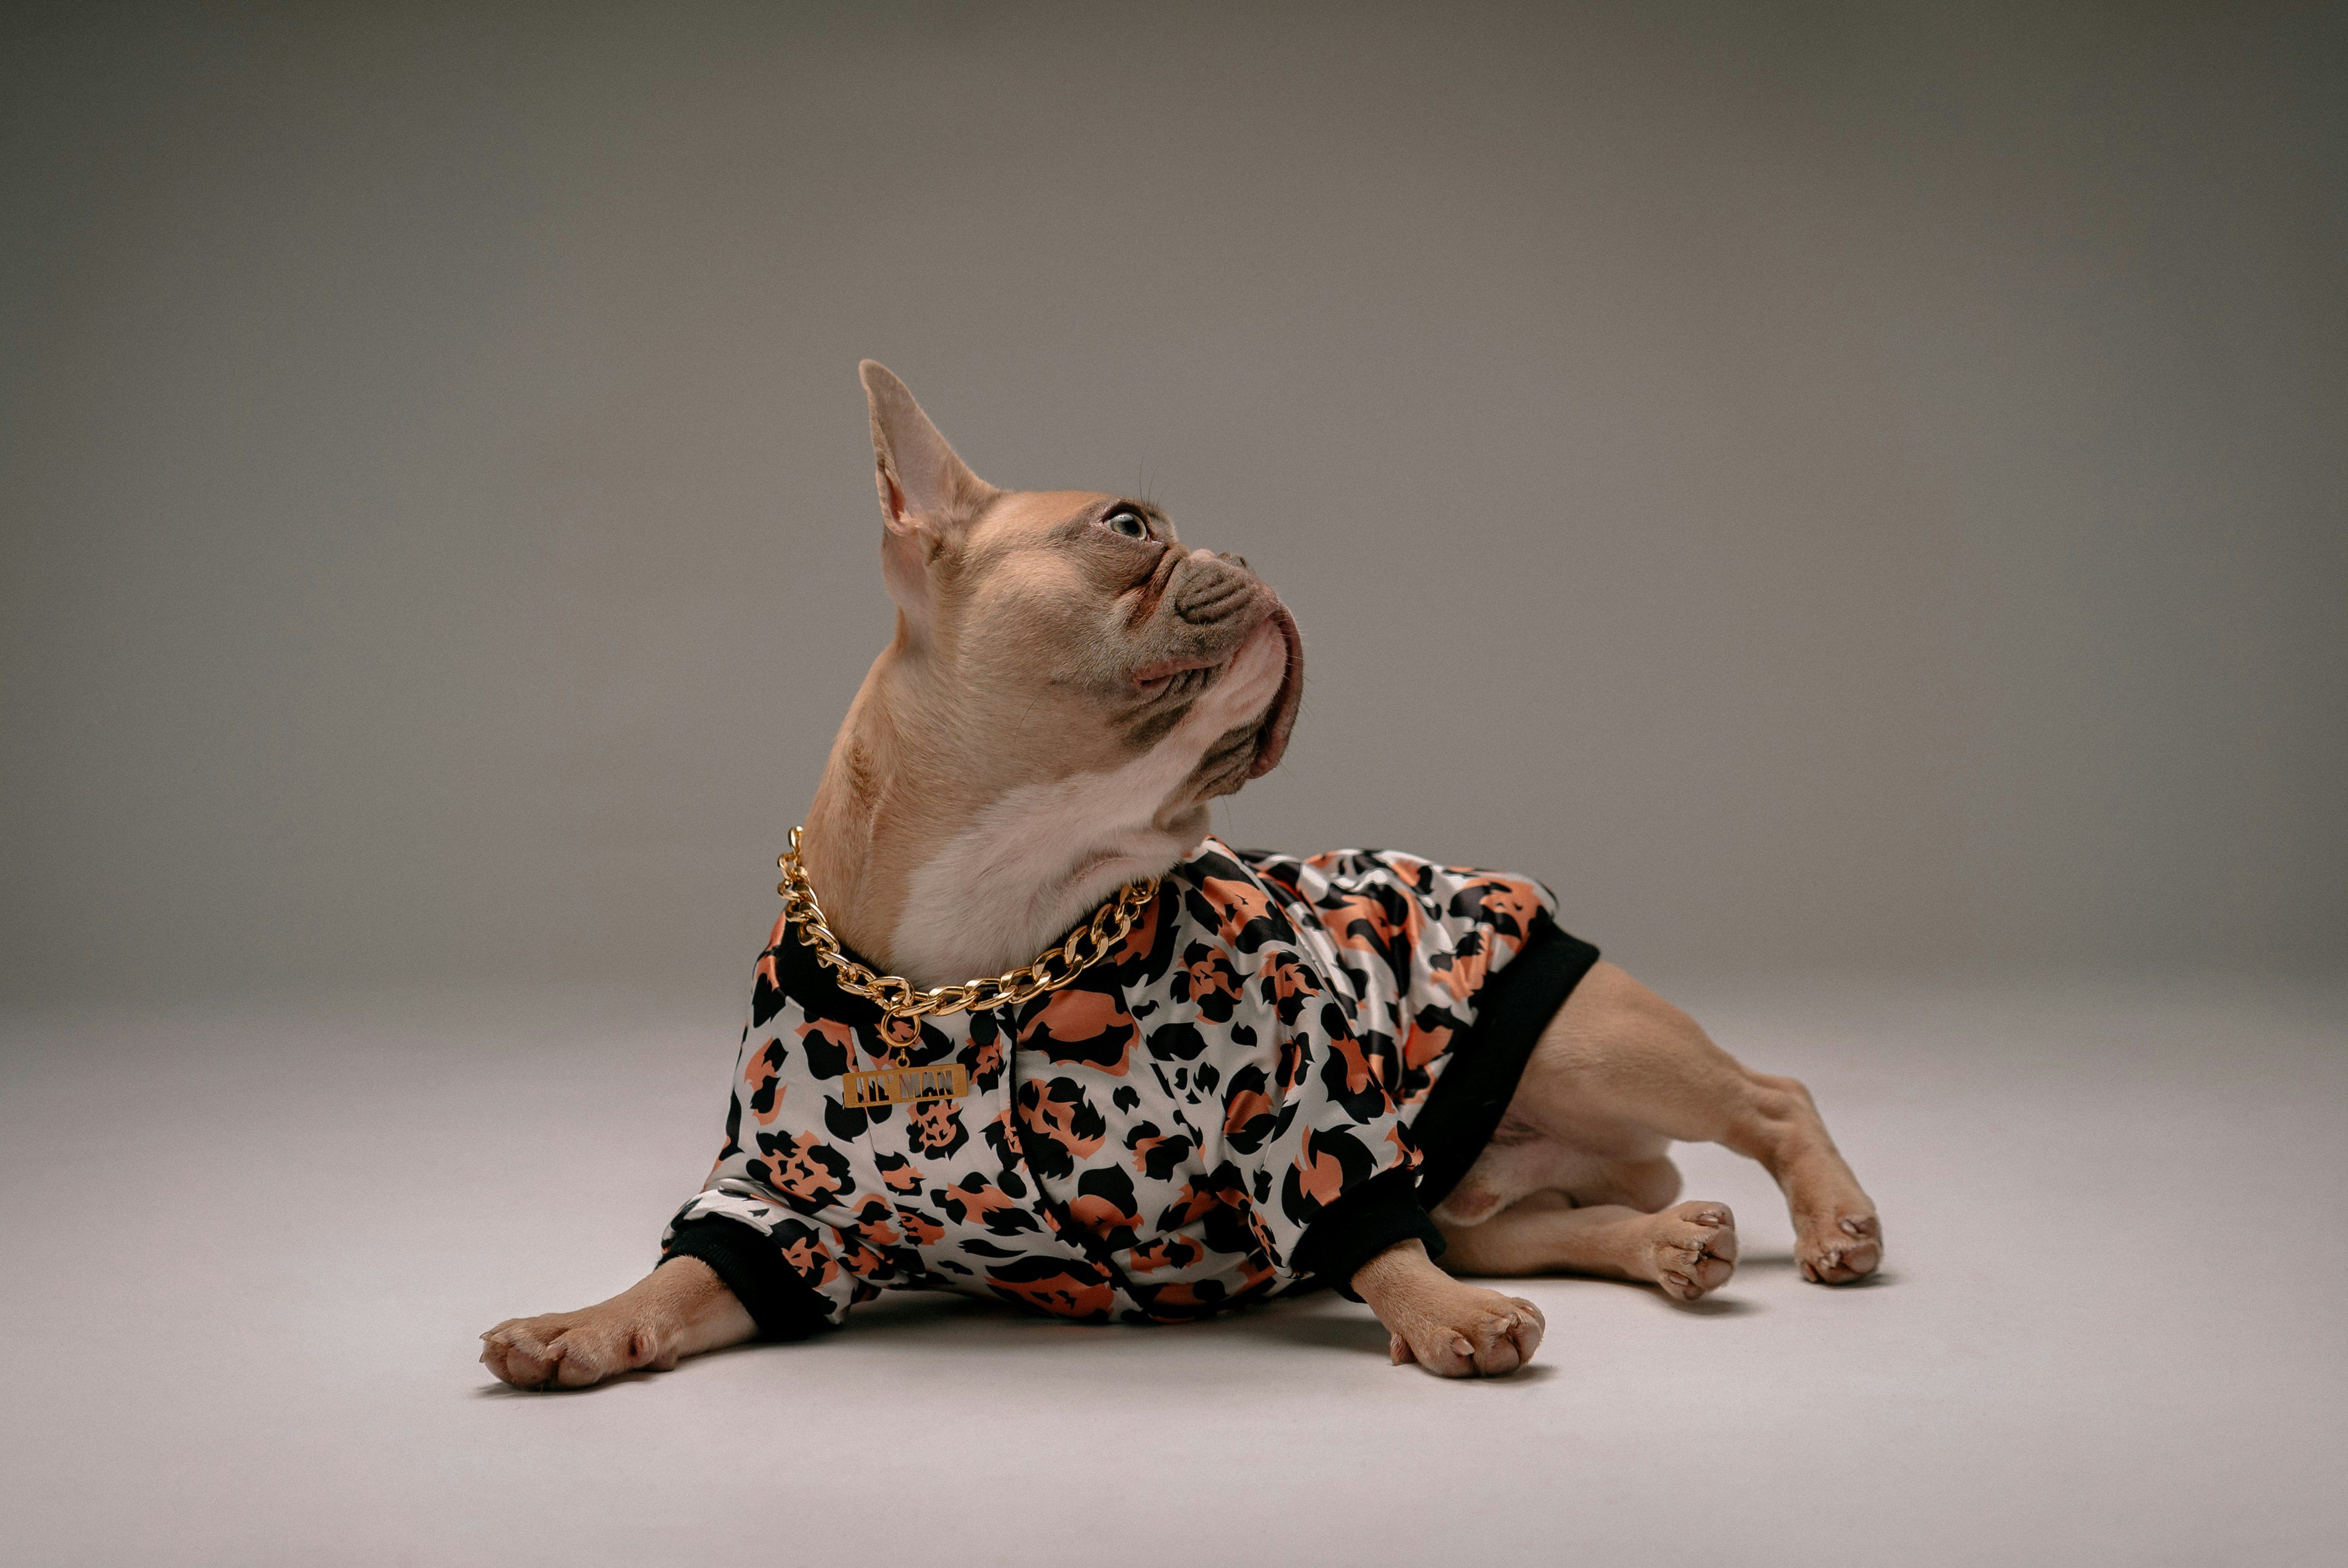 brown short coated small dog wearing black and pink polka dot shirt